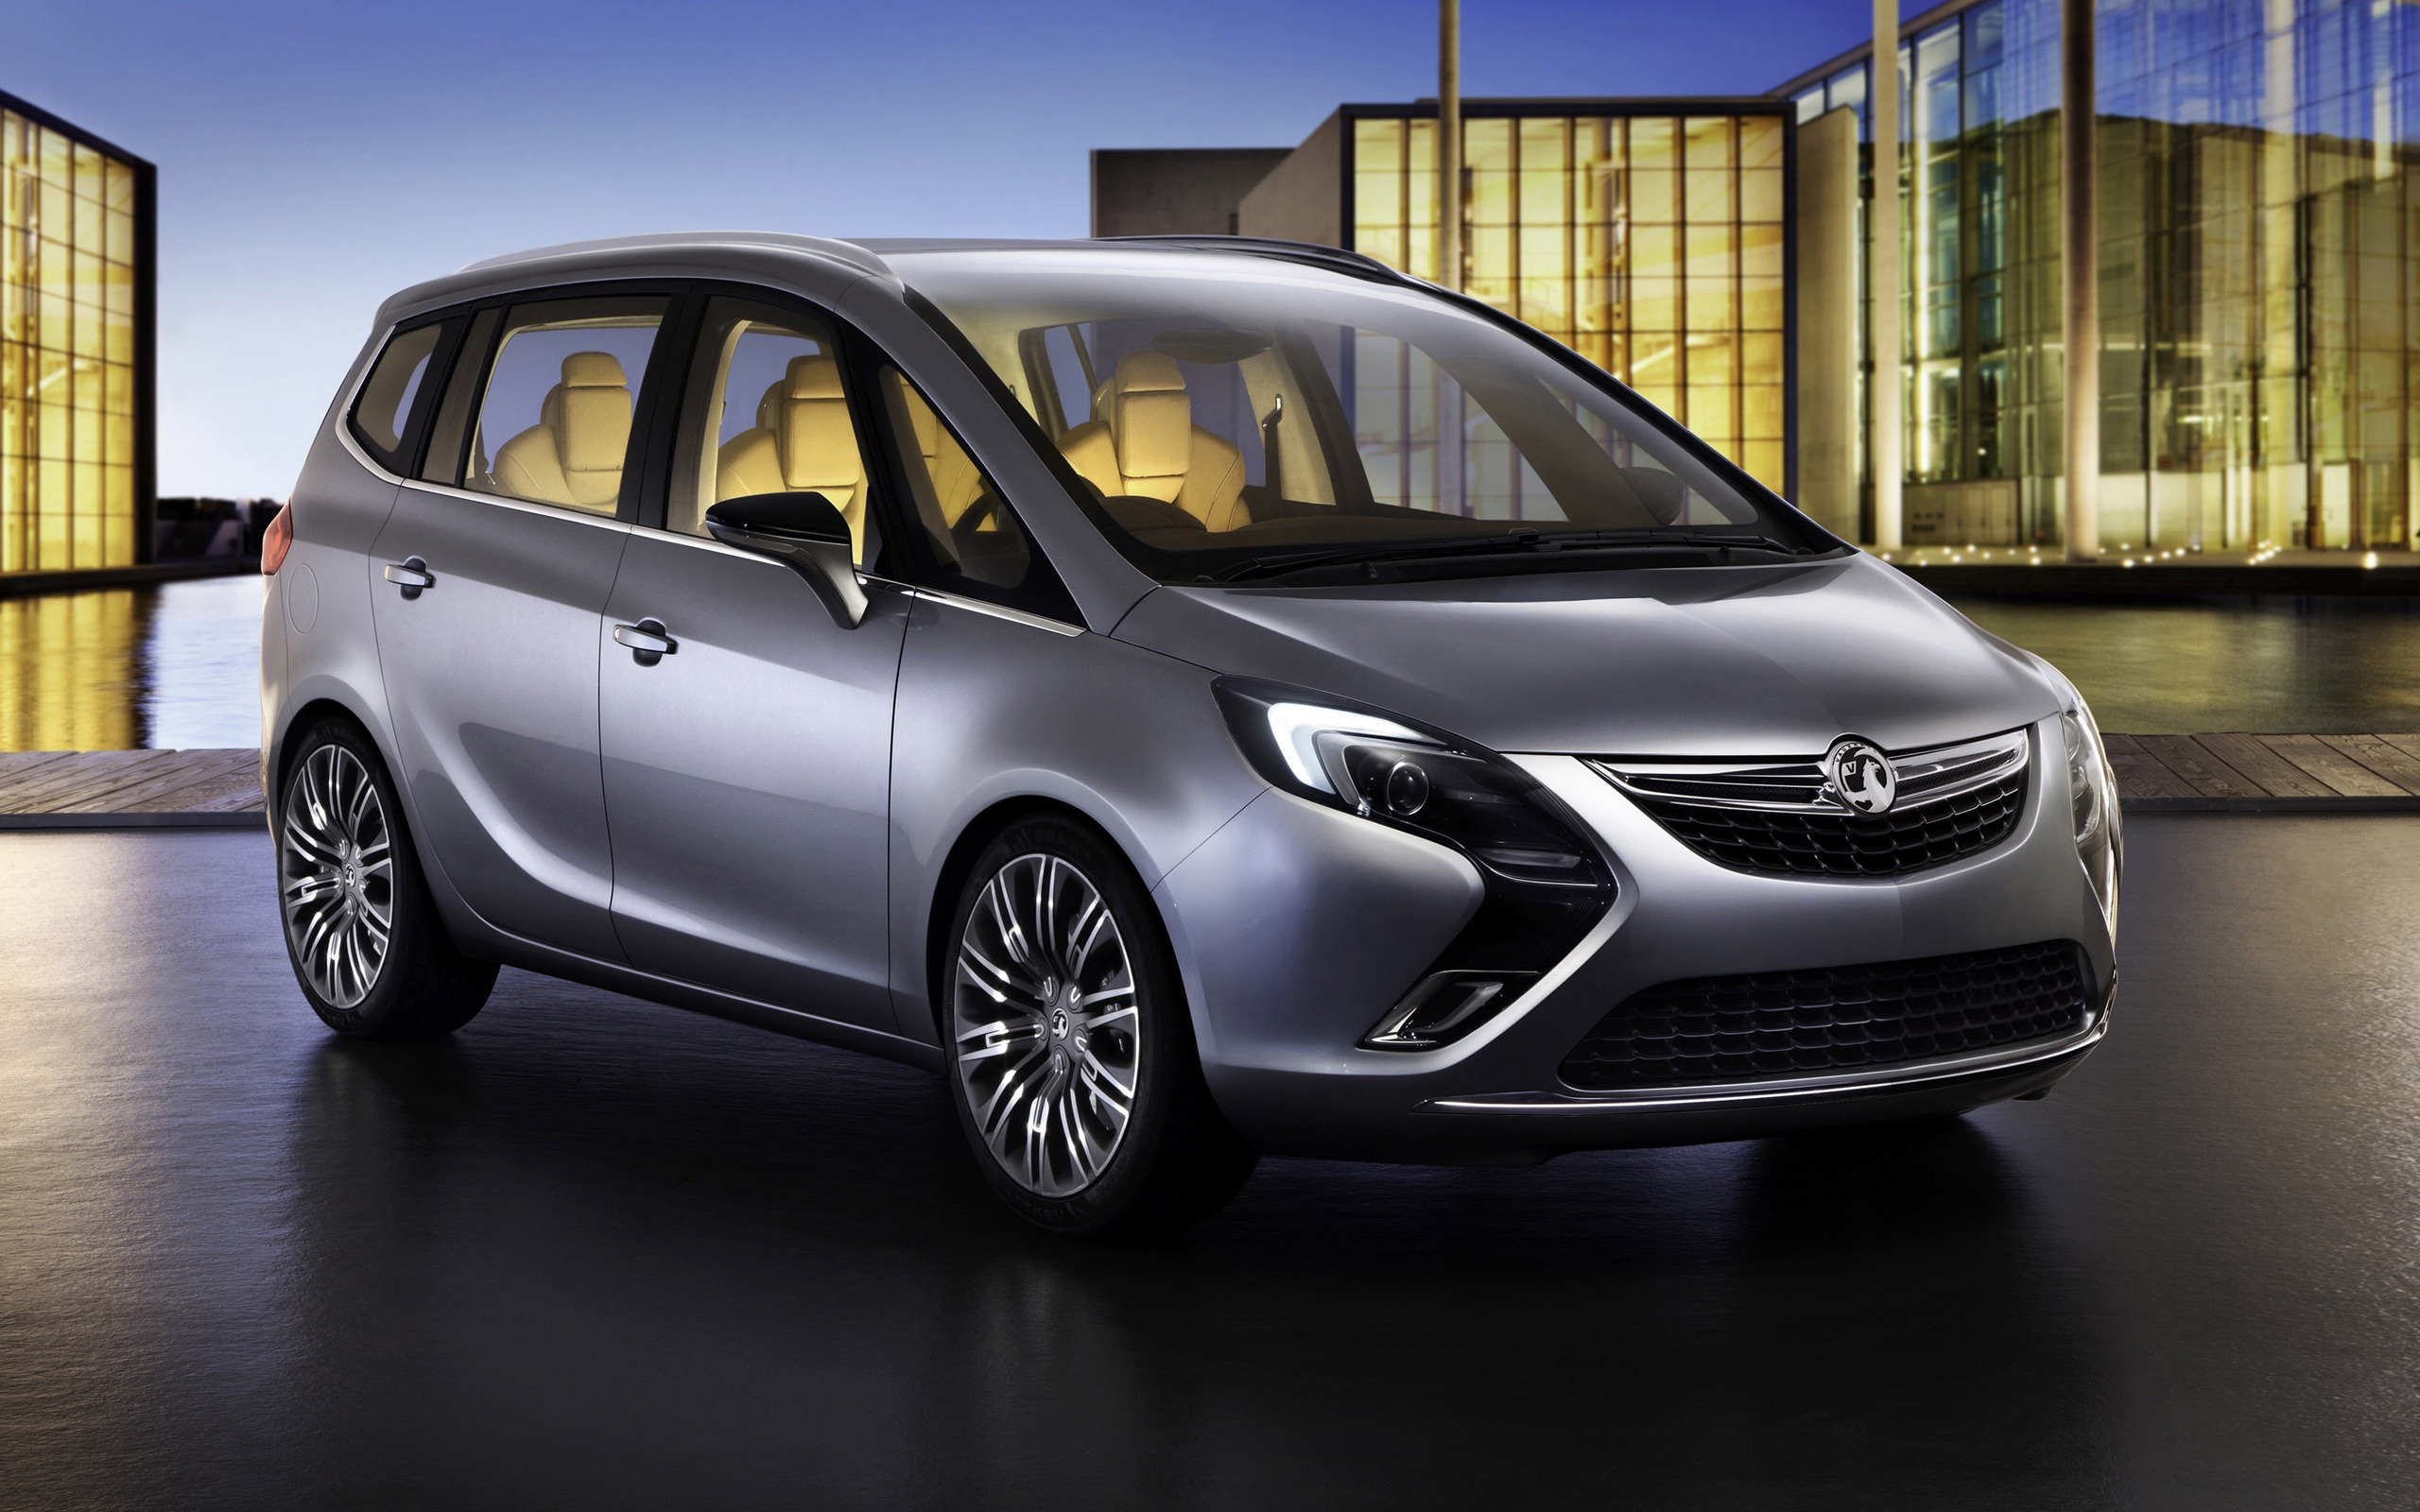 Opel Zafira Tourer Concept for 2560 x 1600 widescreen resolution